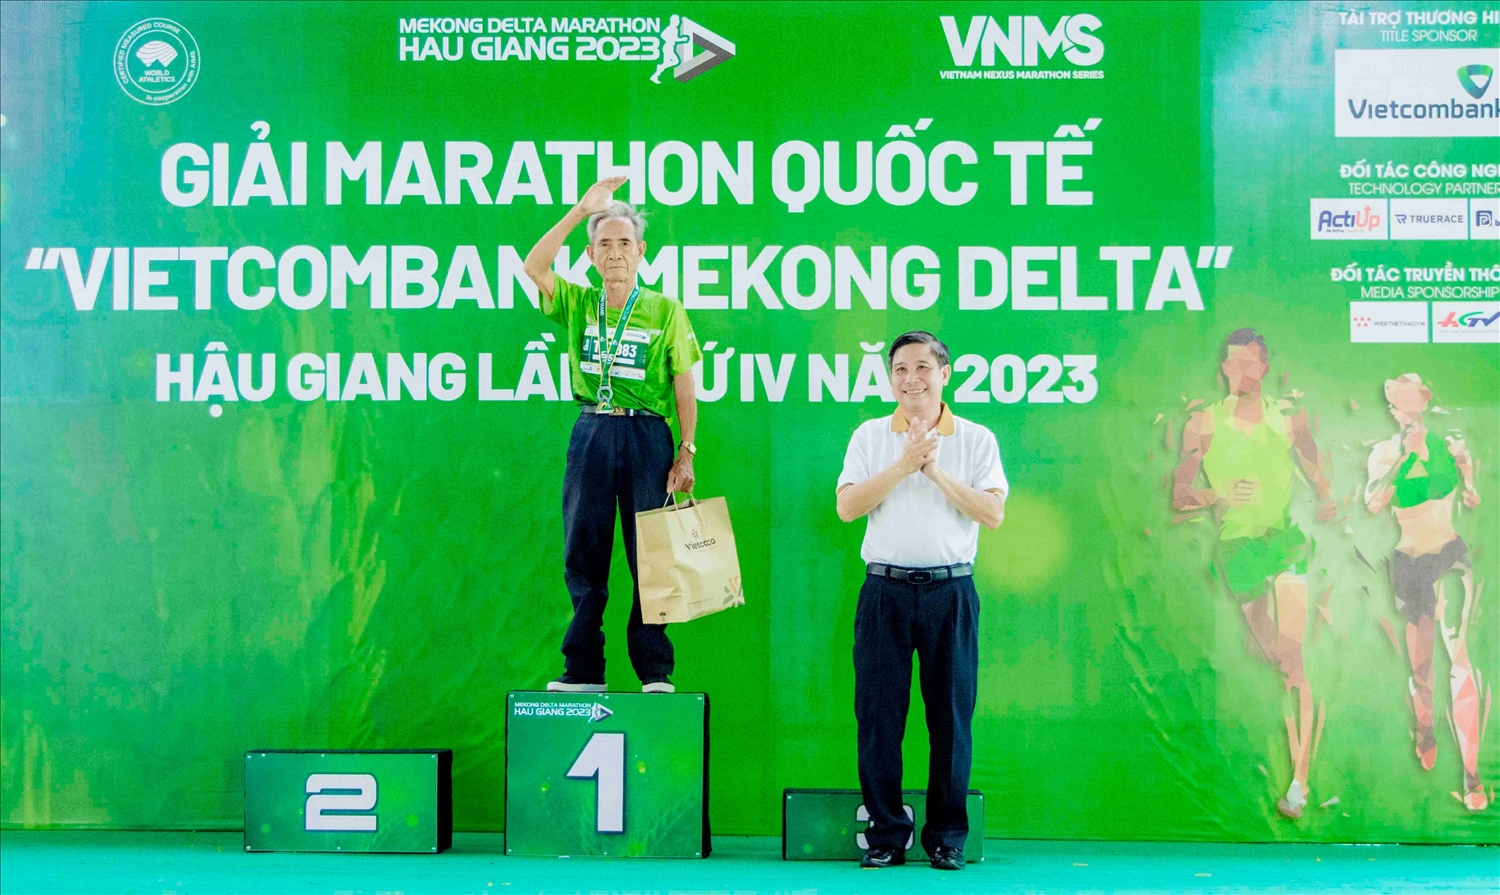 Ông Đồng Văn Thanh, Chủ tịch UBND tỉnh Hậu Giang trao quà cho người cao tuổi nhất tham gia Giải Giải Marathon Quốc tế “Vietcombank Mekong Delta” Hậu Giang lần thứ IV năm 2023